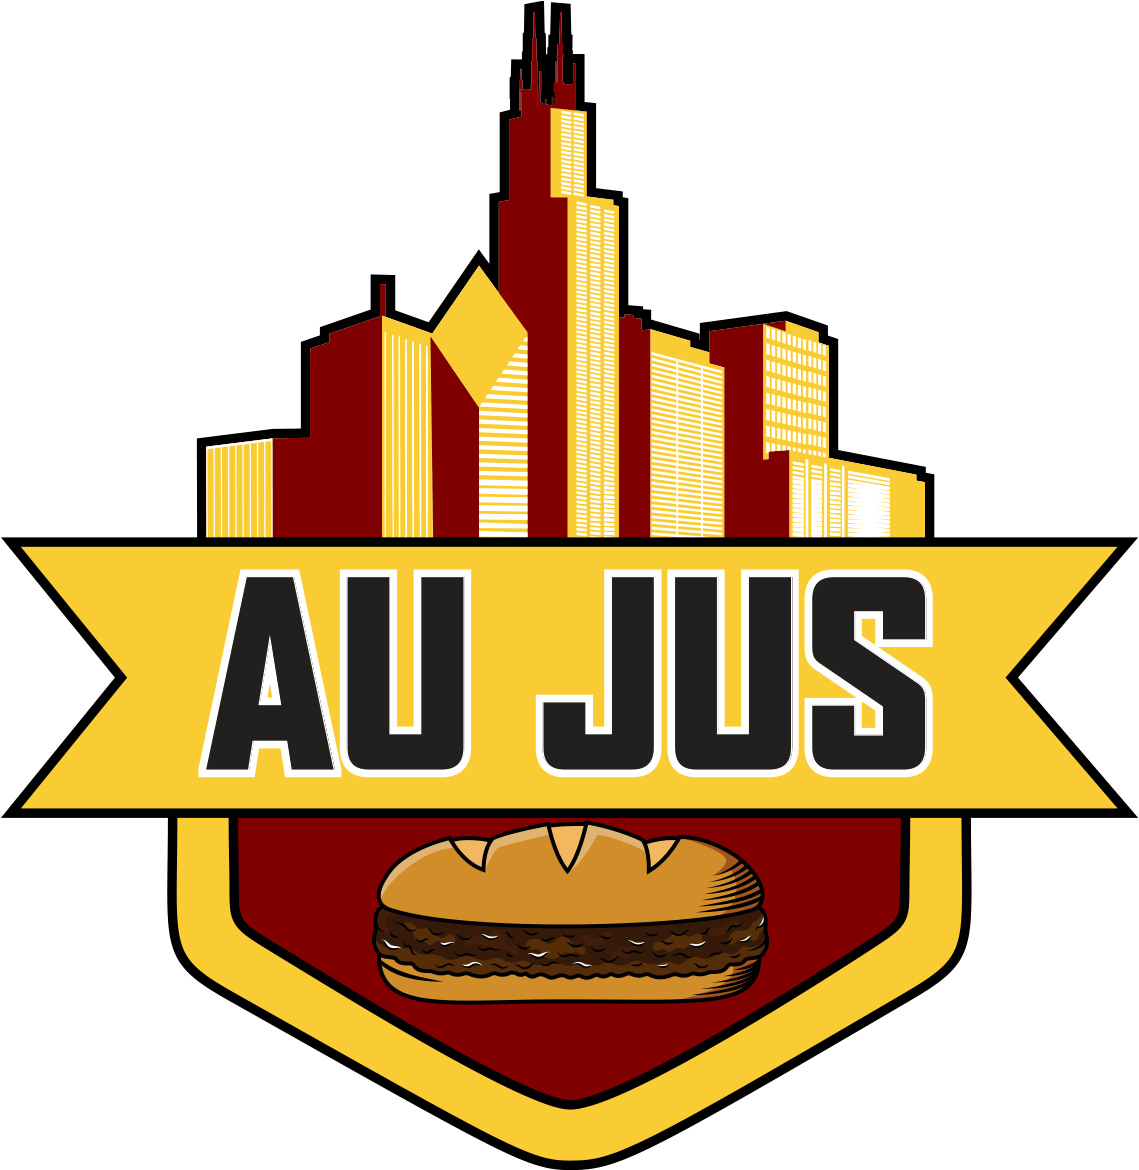 Aujus Logo